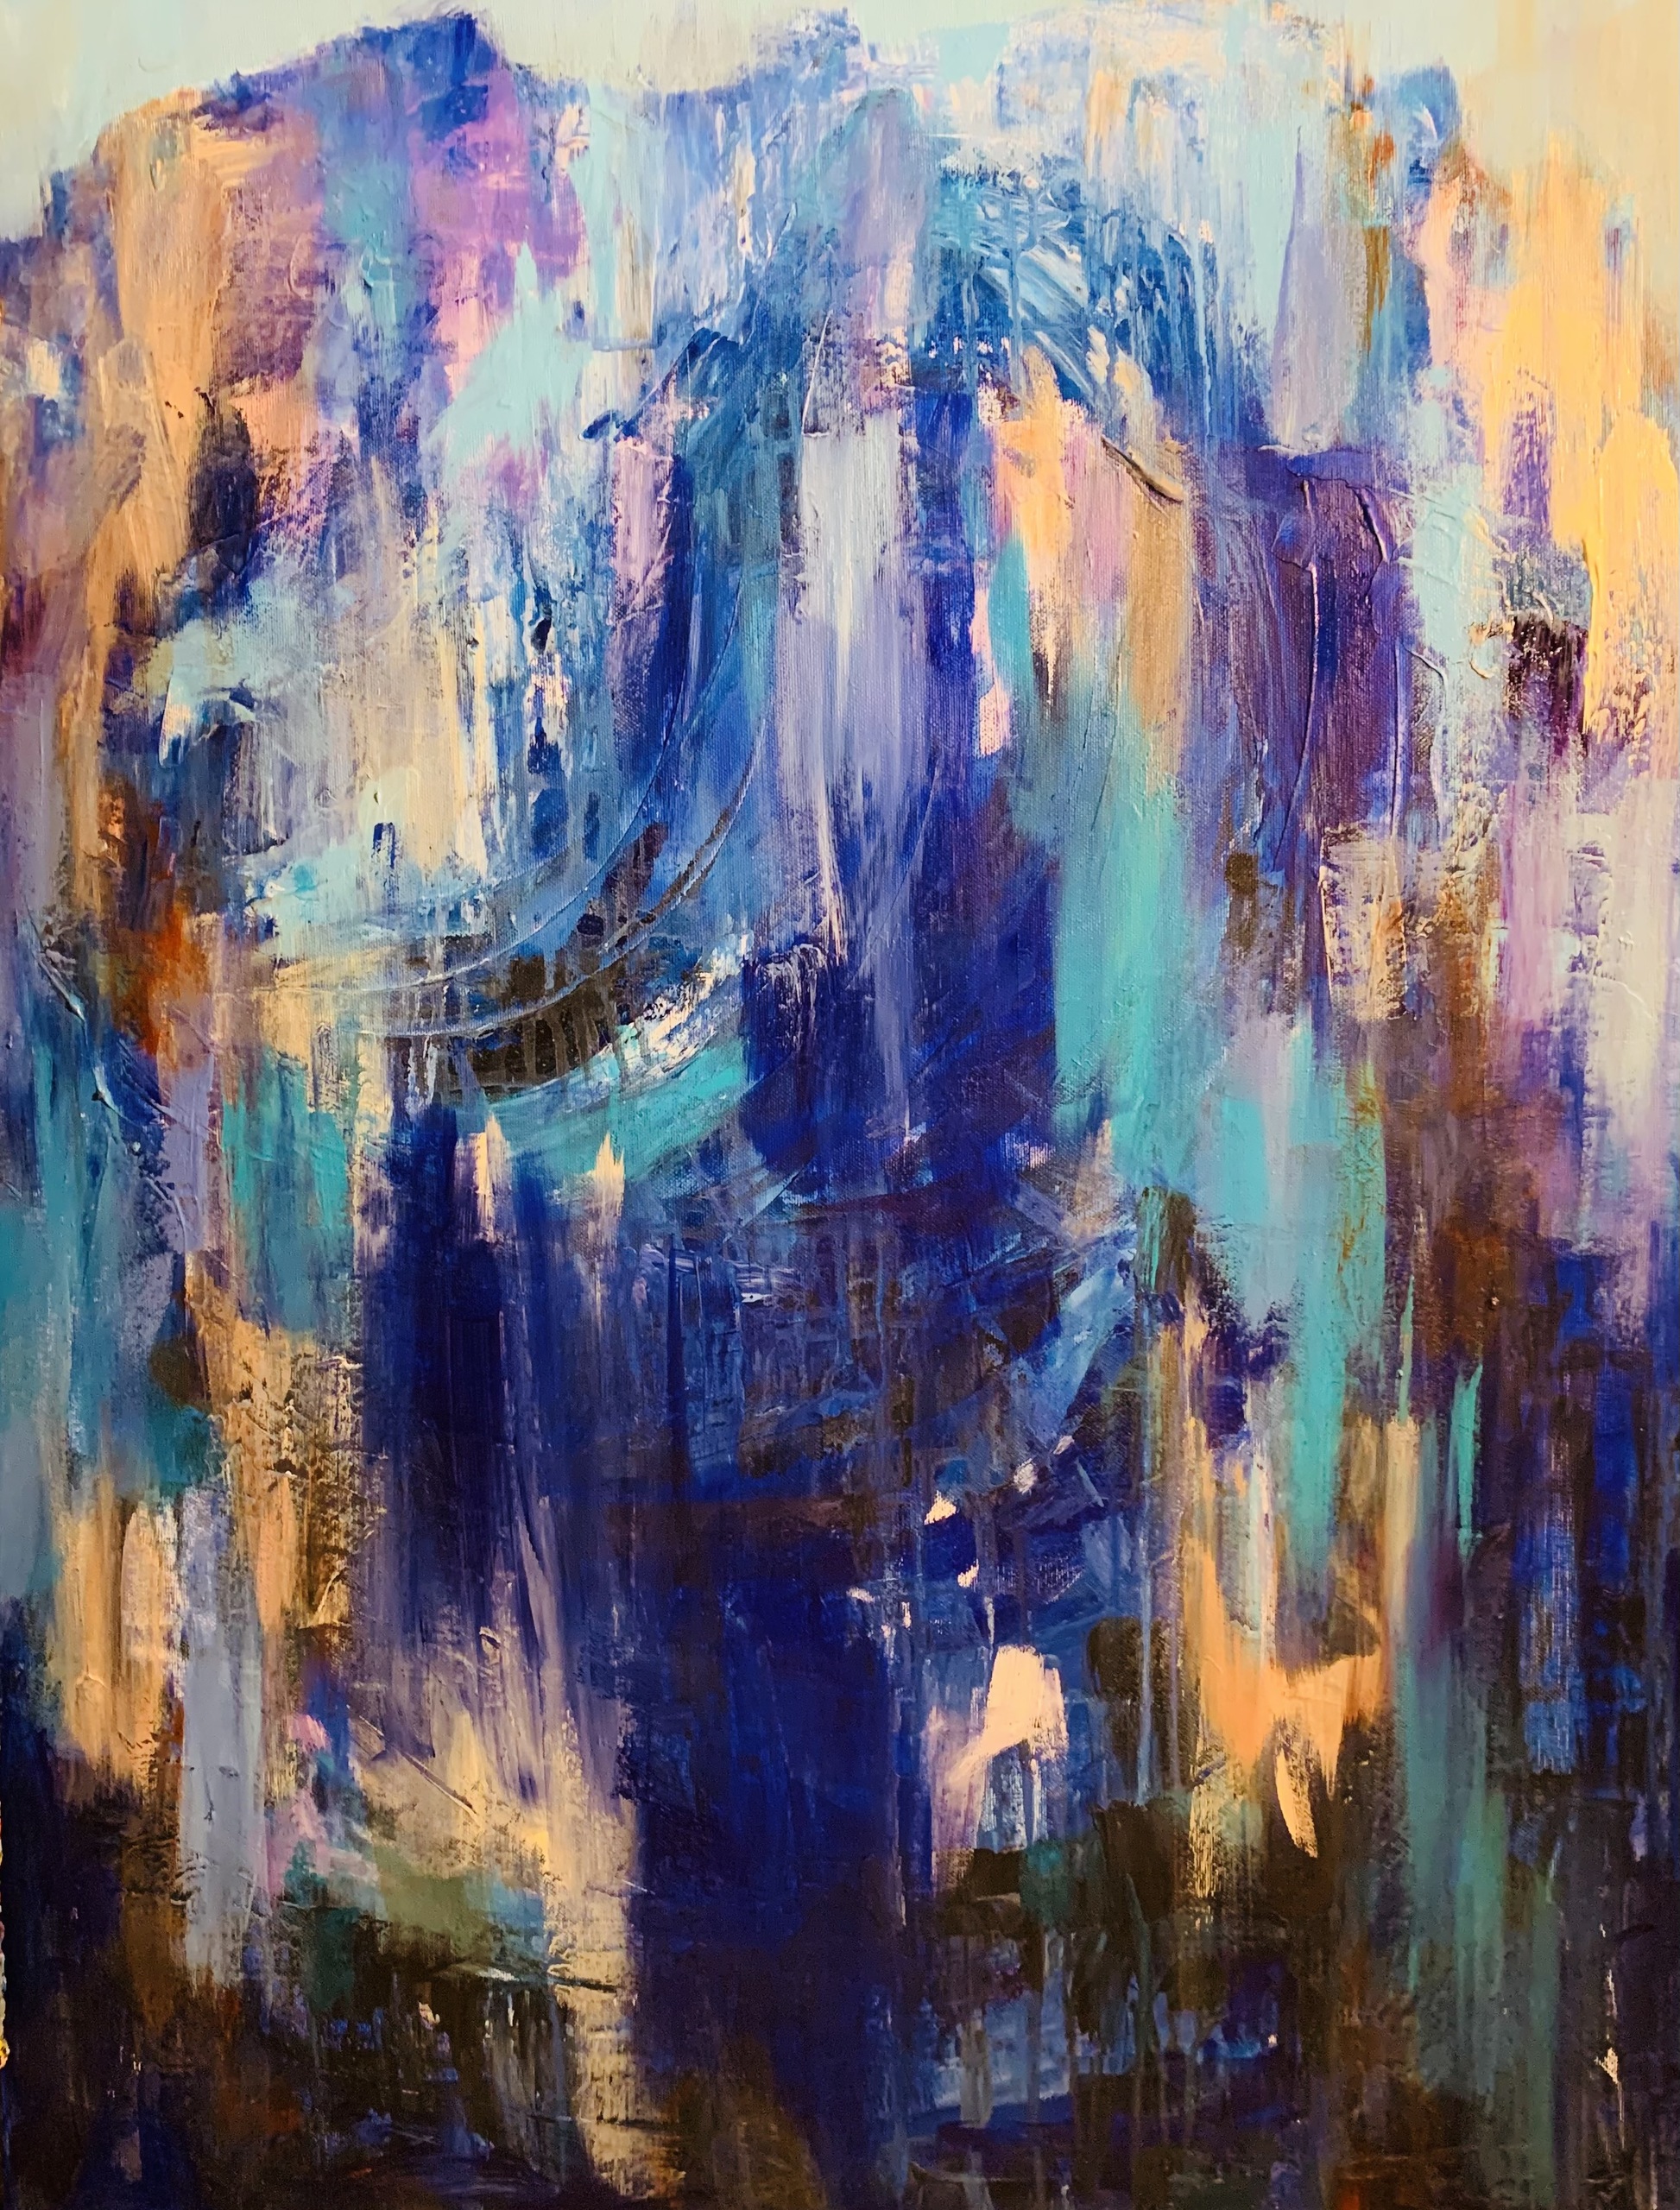 Abstrakt maleri på højkant i blå, violette og brunlige nuancer.